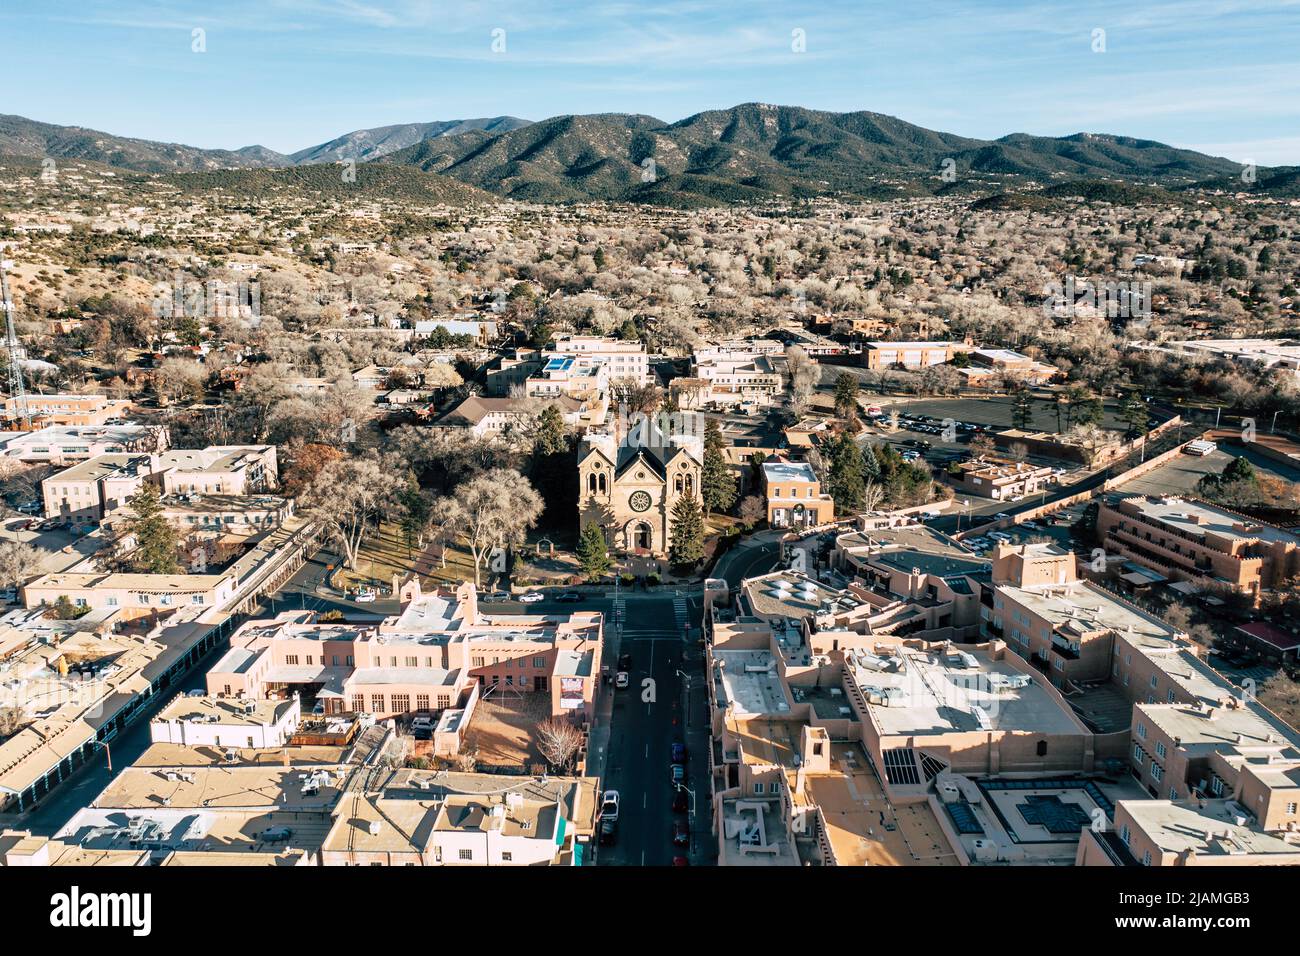 Vista aérea del centro de Santa Fe, Nuevo México Foto de stock